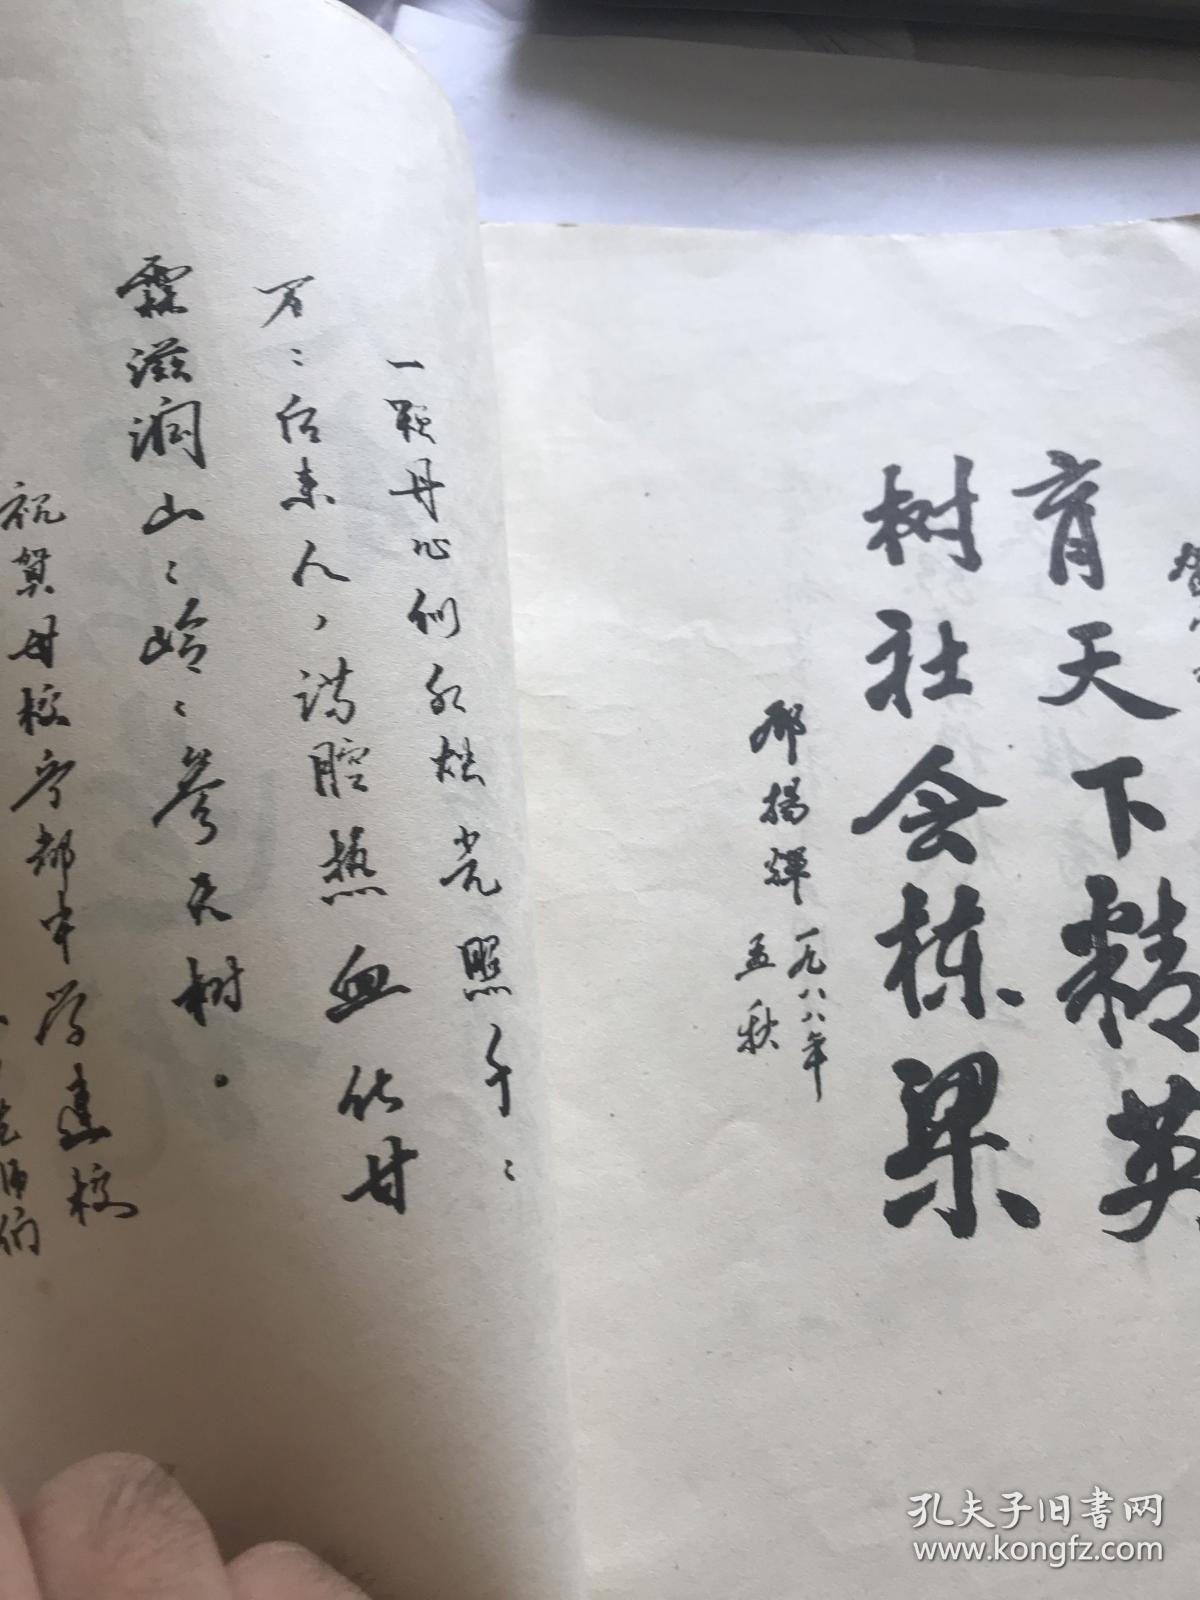 江西省宁都中学建校七十五周年校庆专辑（1913——1988）老师和学生名单